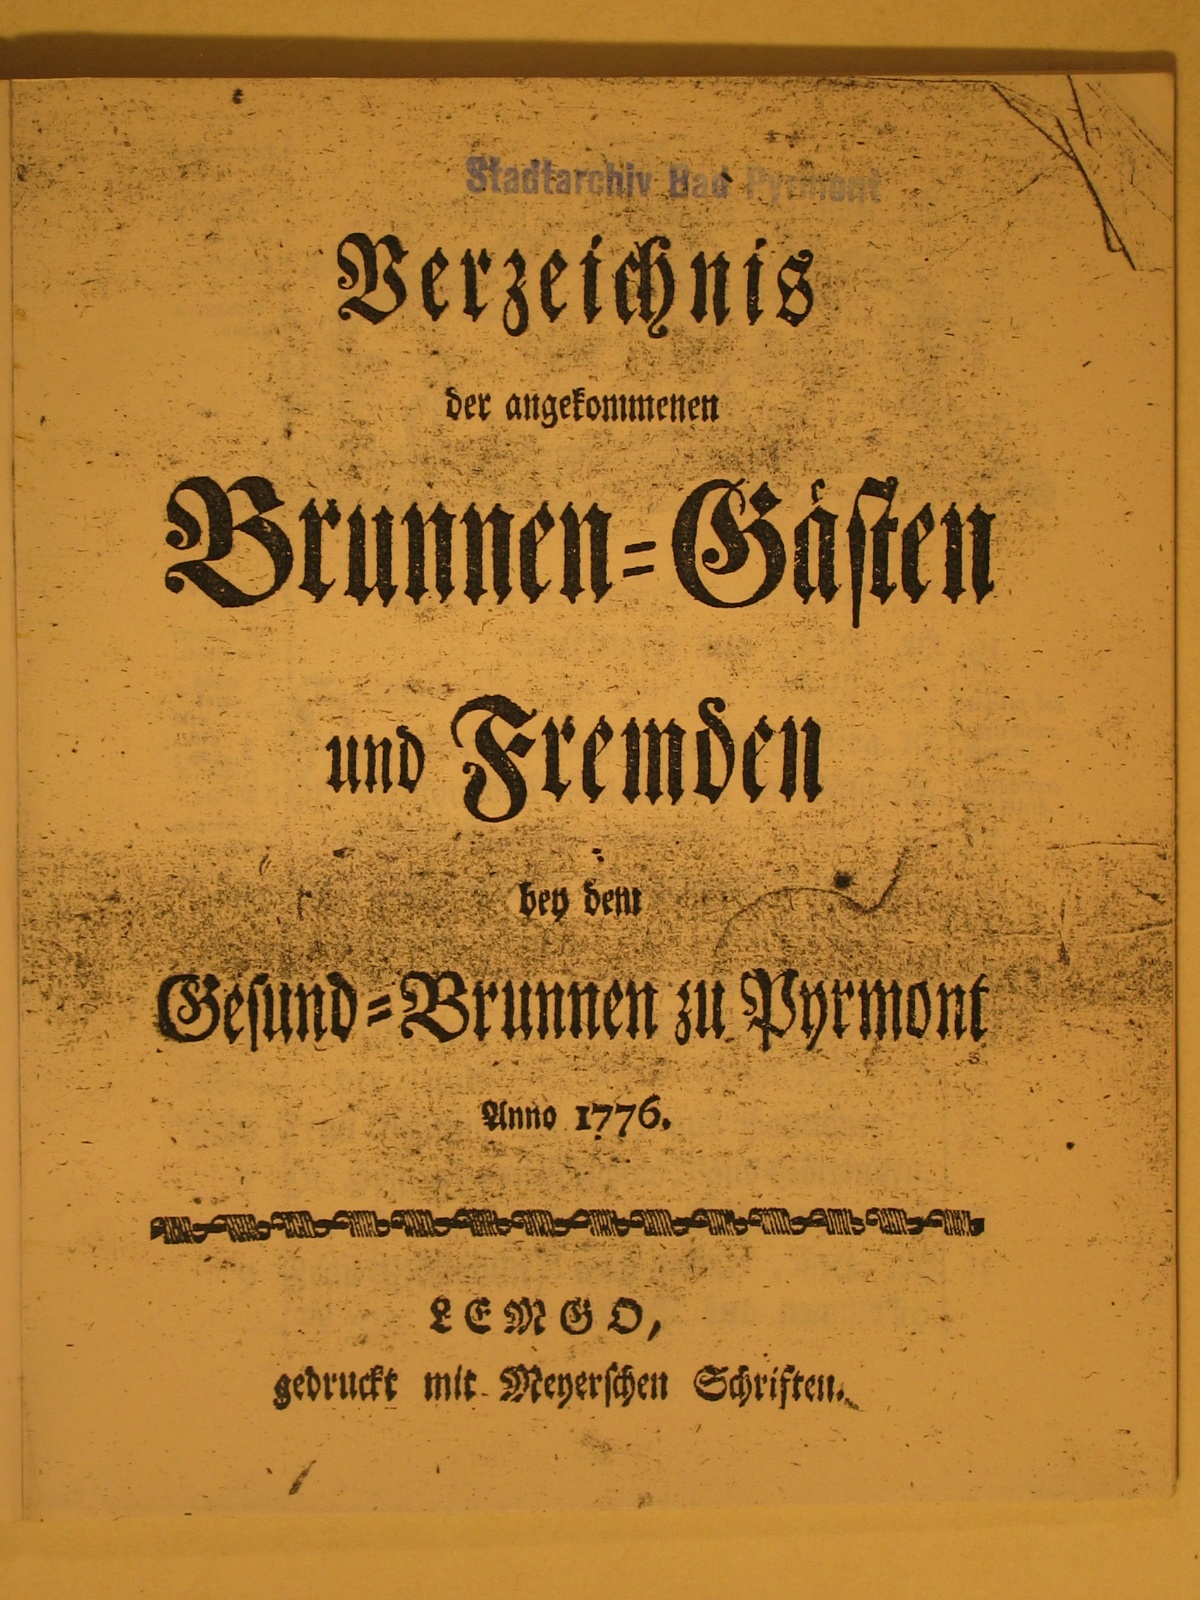 Verzeichnis derer angekommen Brunnengäste und Fremden Anno 1776 - Verzeichniß (Museum im Schloss Bad Pyrmont CC BY-NC-SA)